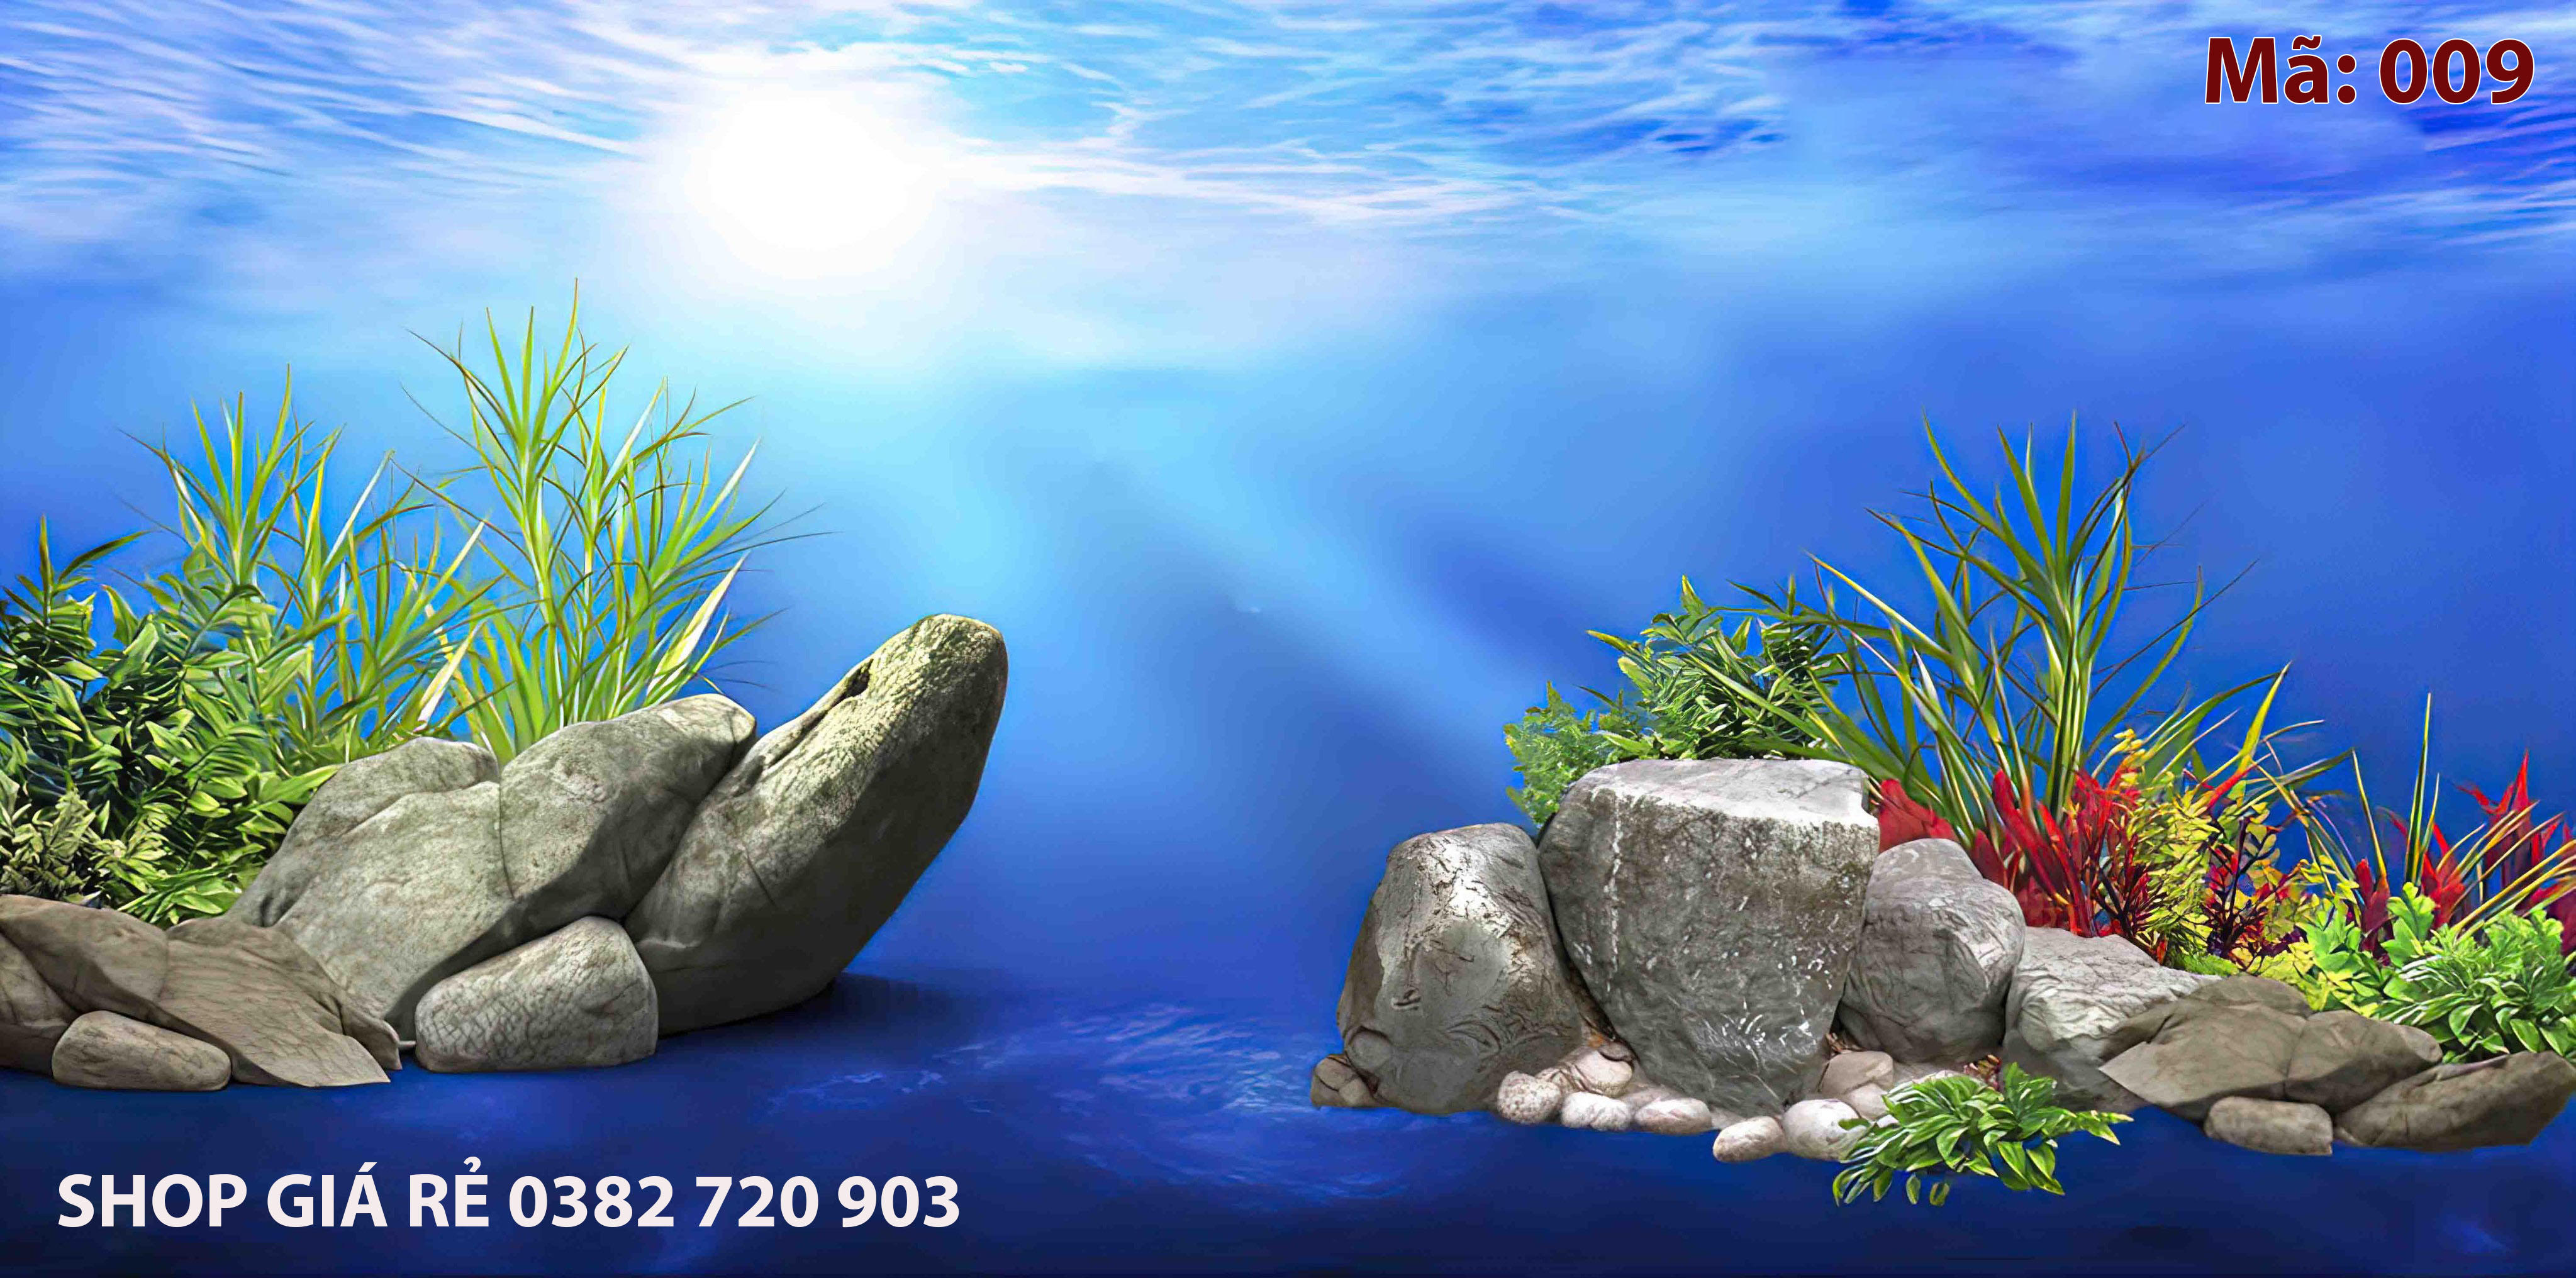 Tranh 3D Hồ Cá đá: Không gian nhà bạn trở nên trầm lắng và thanh tịnh hơn với bức tranh 3D Hồ Cá đá. Hình ảnh những tảng đá vững chãi kề bên hồ thủy sinh, tạo nên một khung cảnh thật độc đáo và nổi bật.